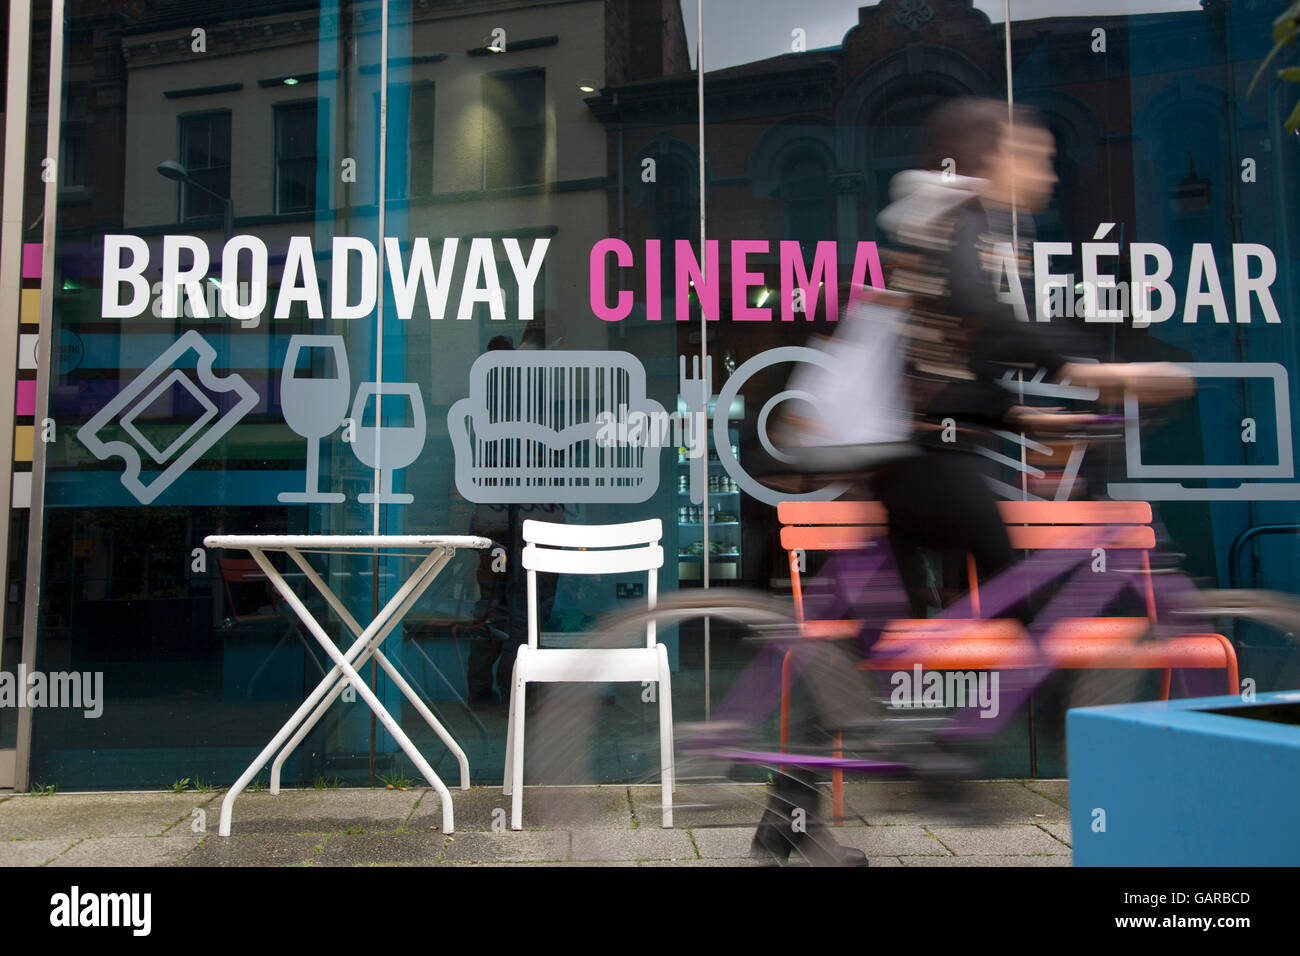 Broadway Cinema Cafe and Bar Sign; Nottingham; England; UK Stock Photo